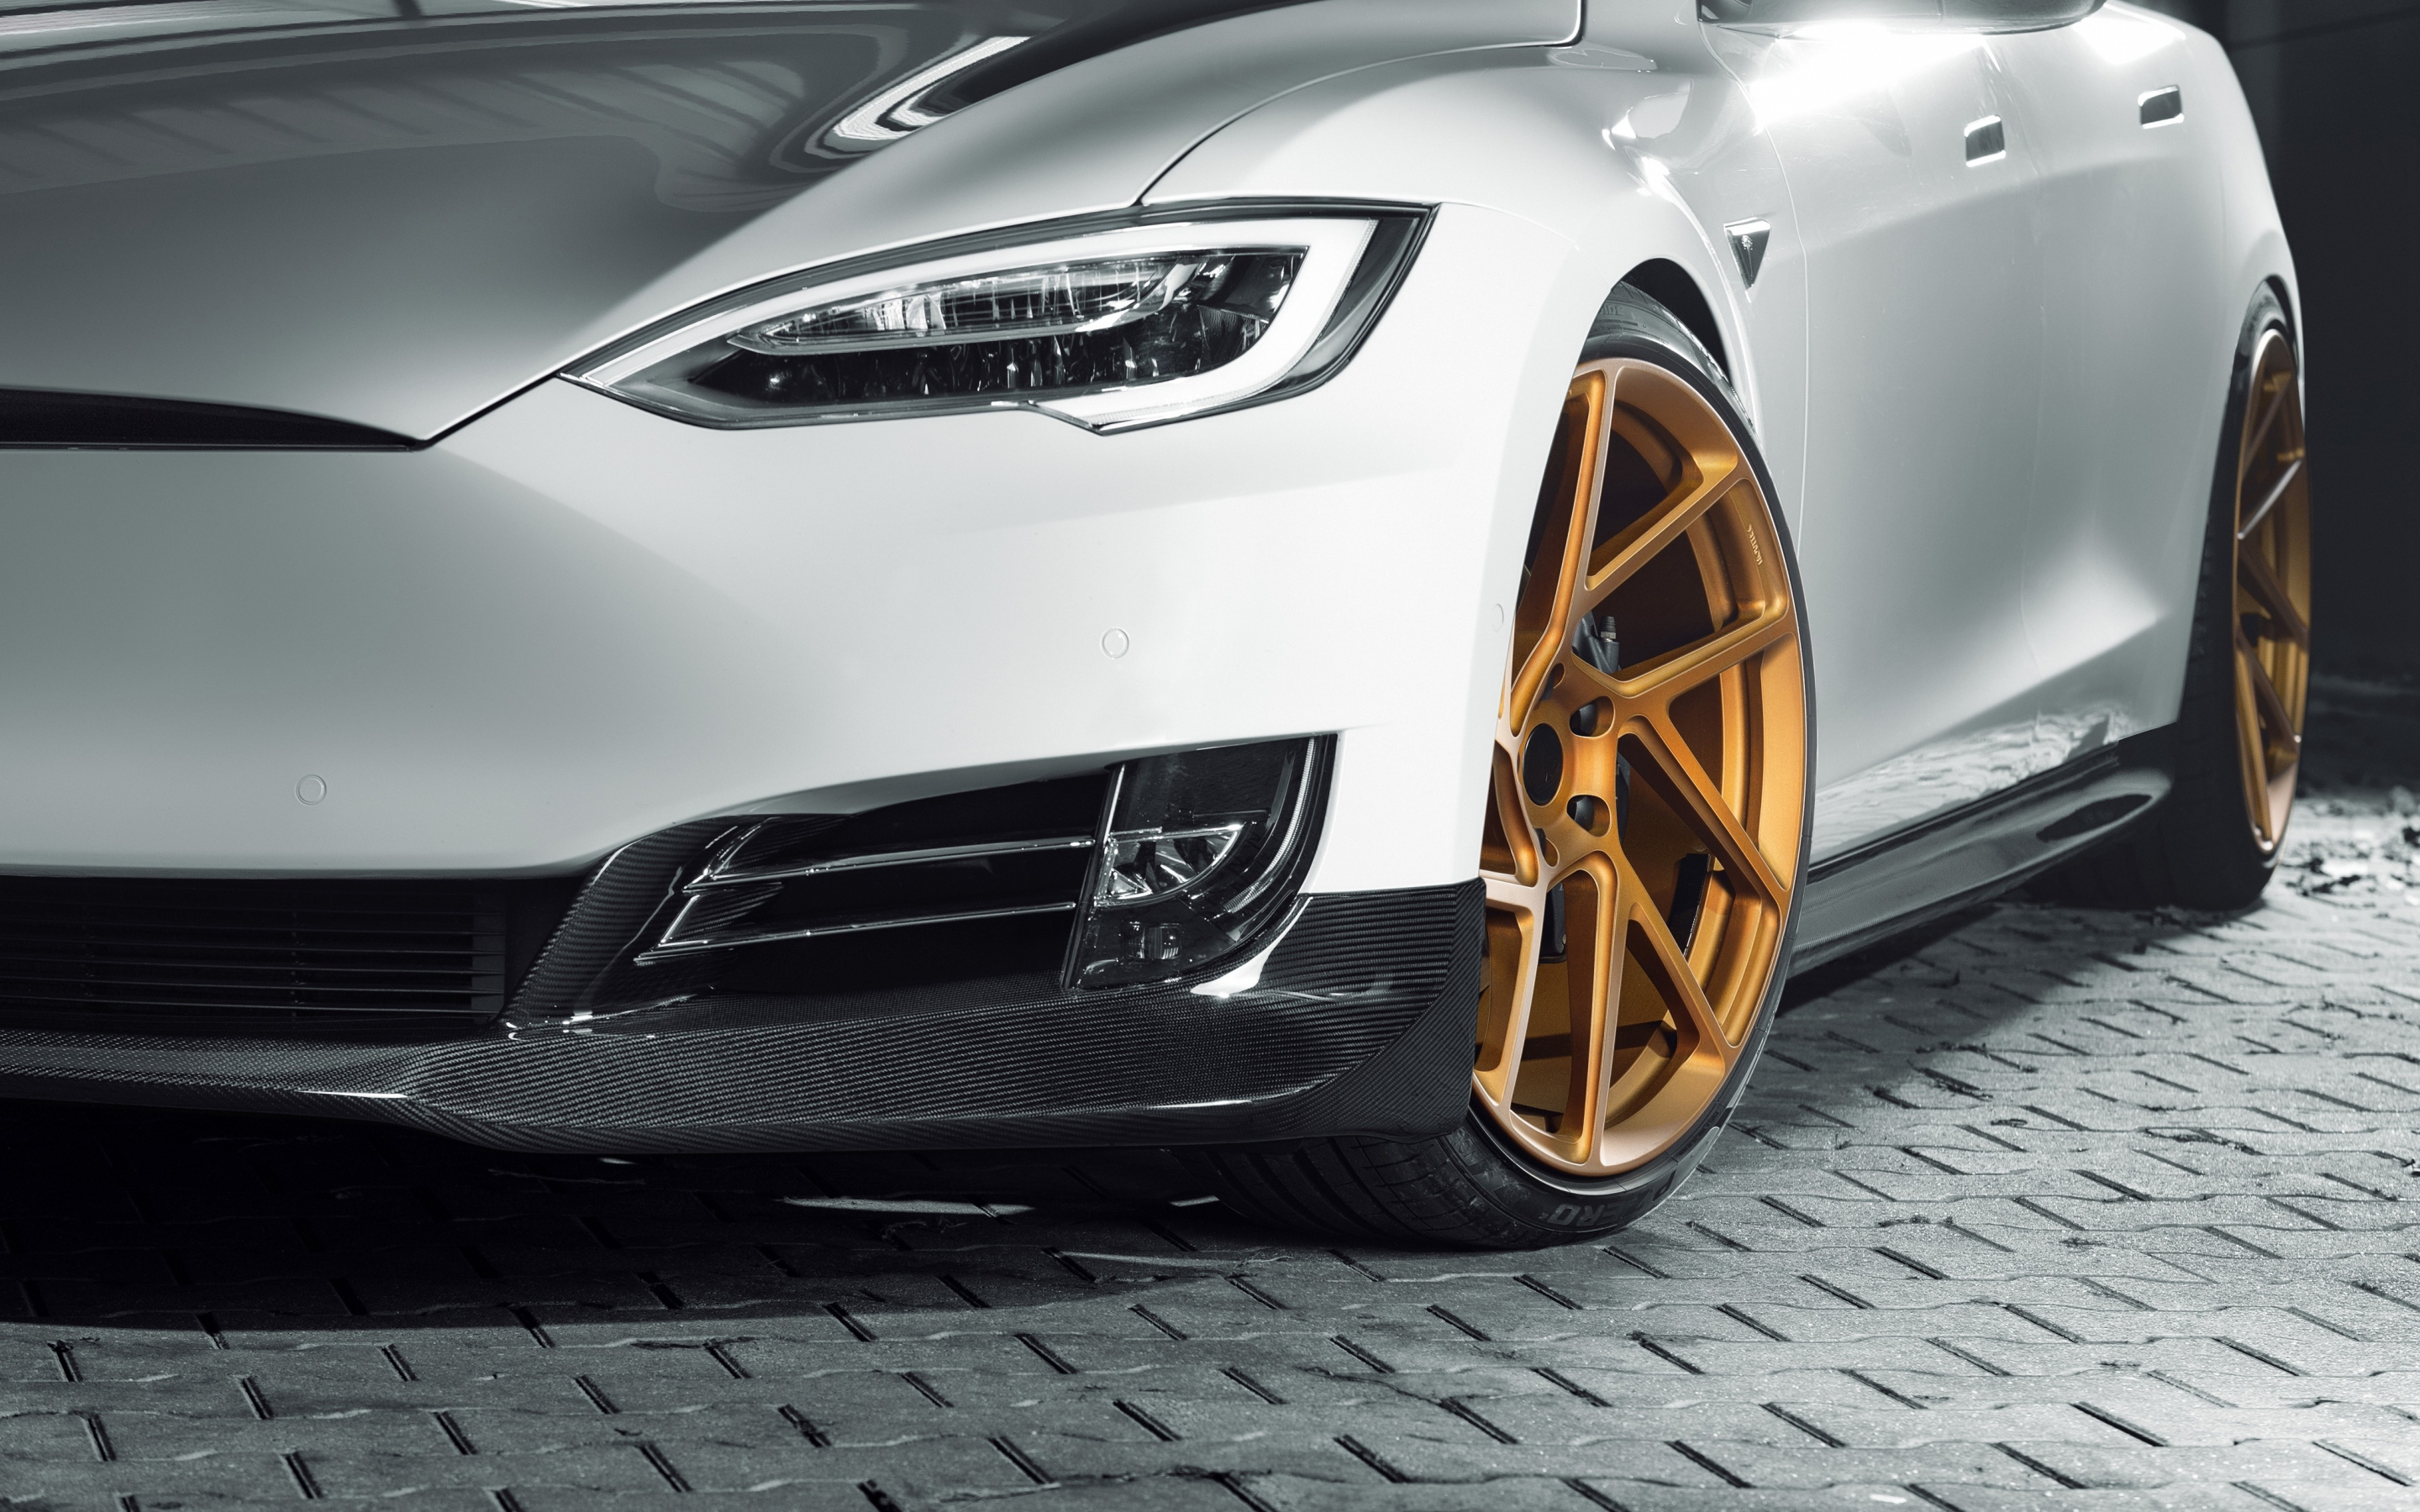 Tesla Model S, novitec, wheels, luxury car, 2880x1800 wallpaper